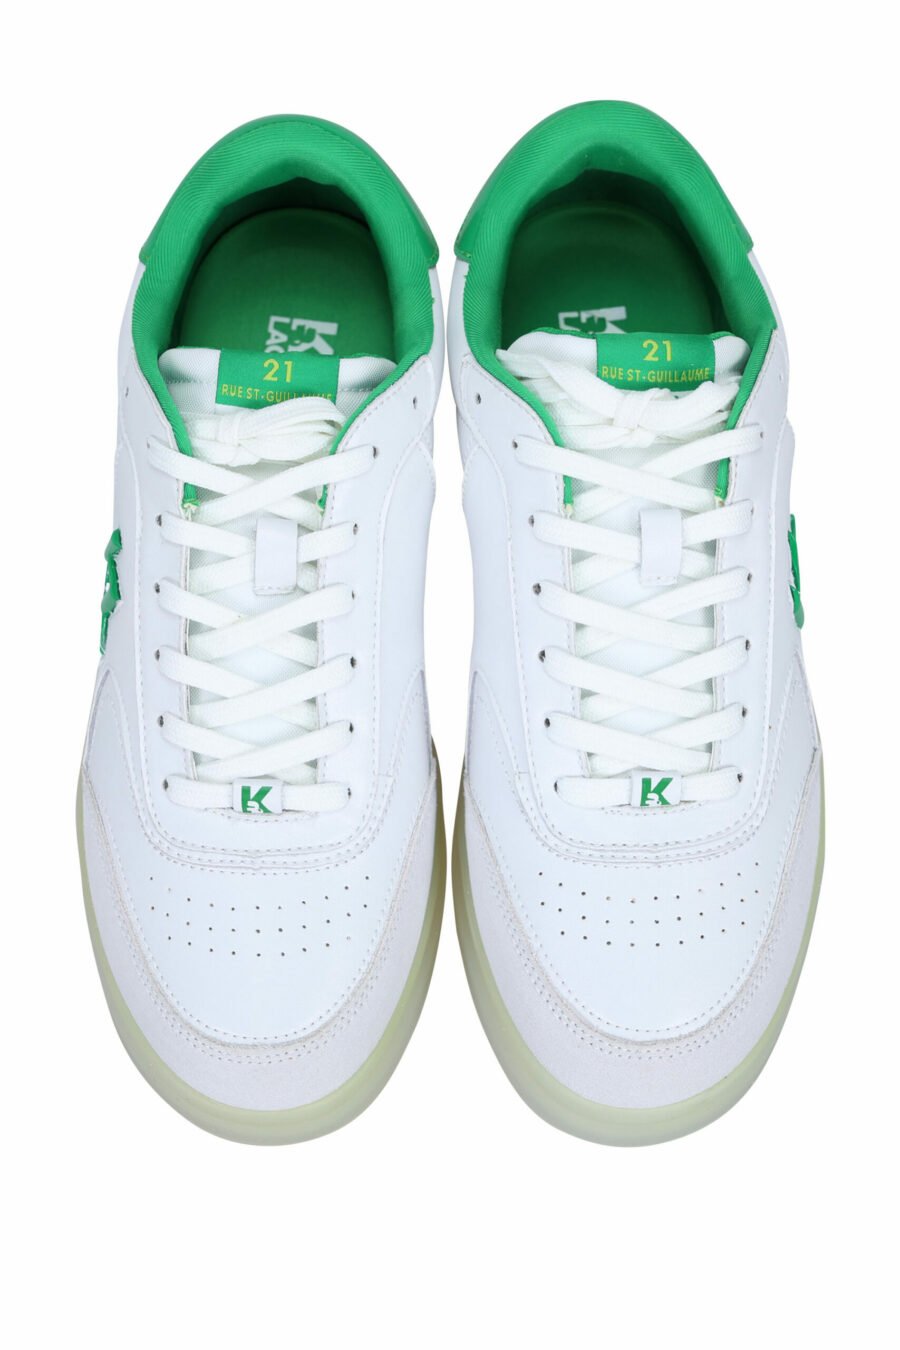 Zapatillas blancas y gris "brink" con detalles verdes - 5059529294495 4 scaled